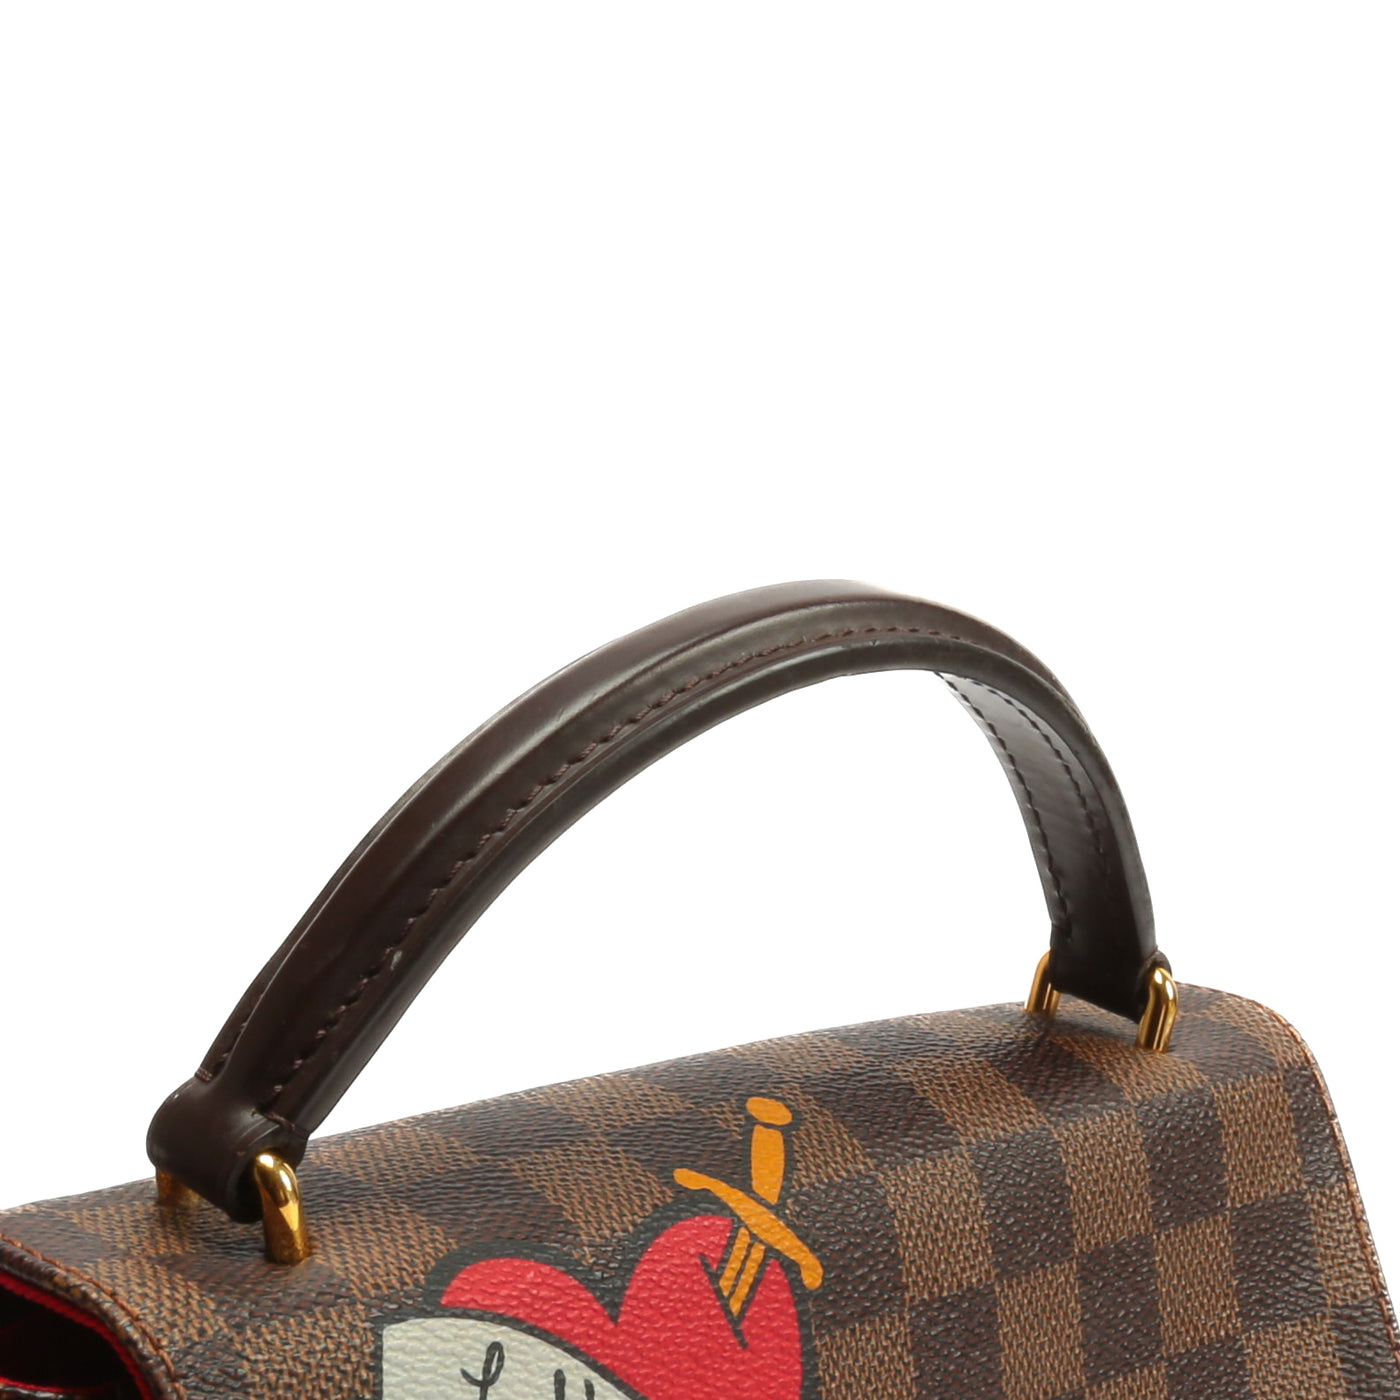 Louis Vuitton Croisette Handbag Limited Edition Patches Damier at